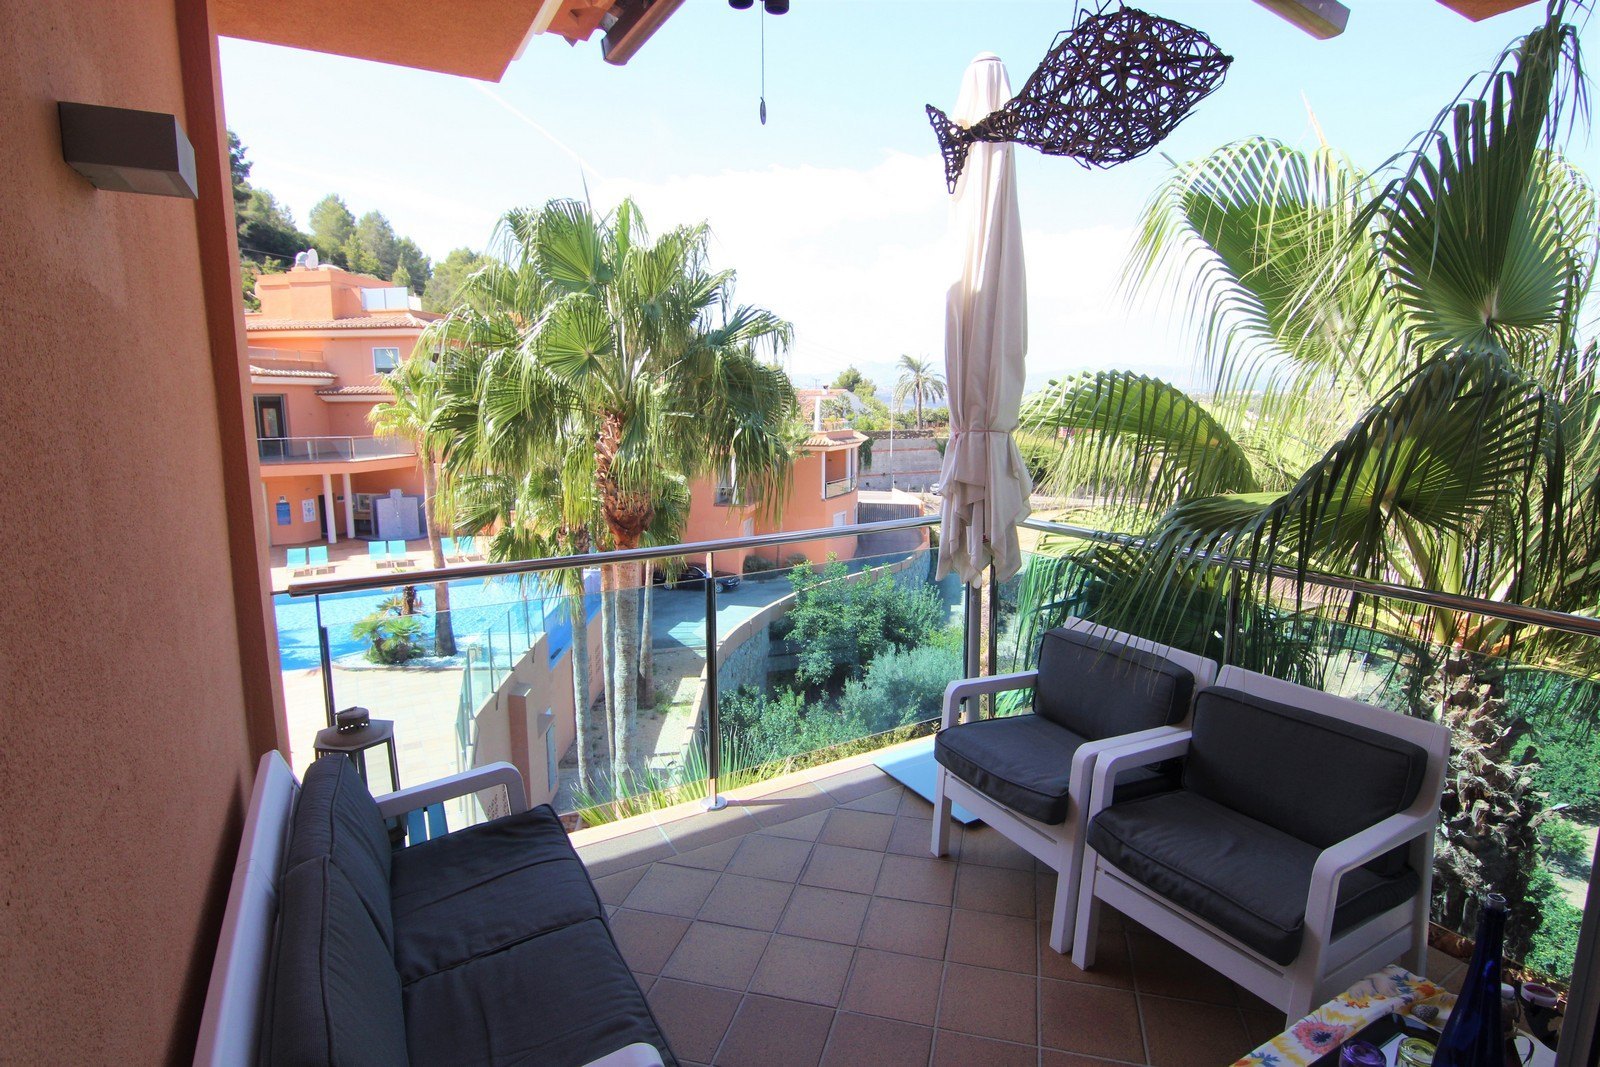 Appartement te koop met zwembad in Calistros Benitatxell.